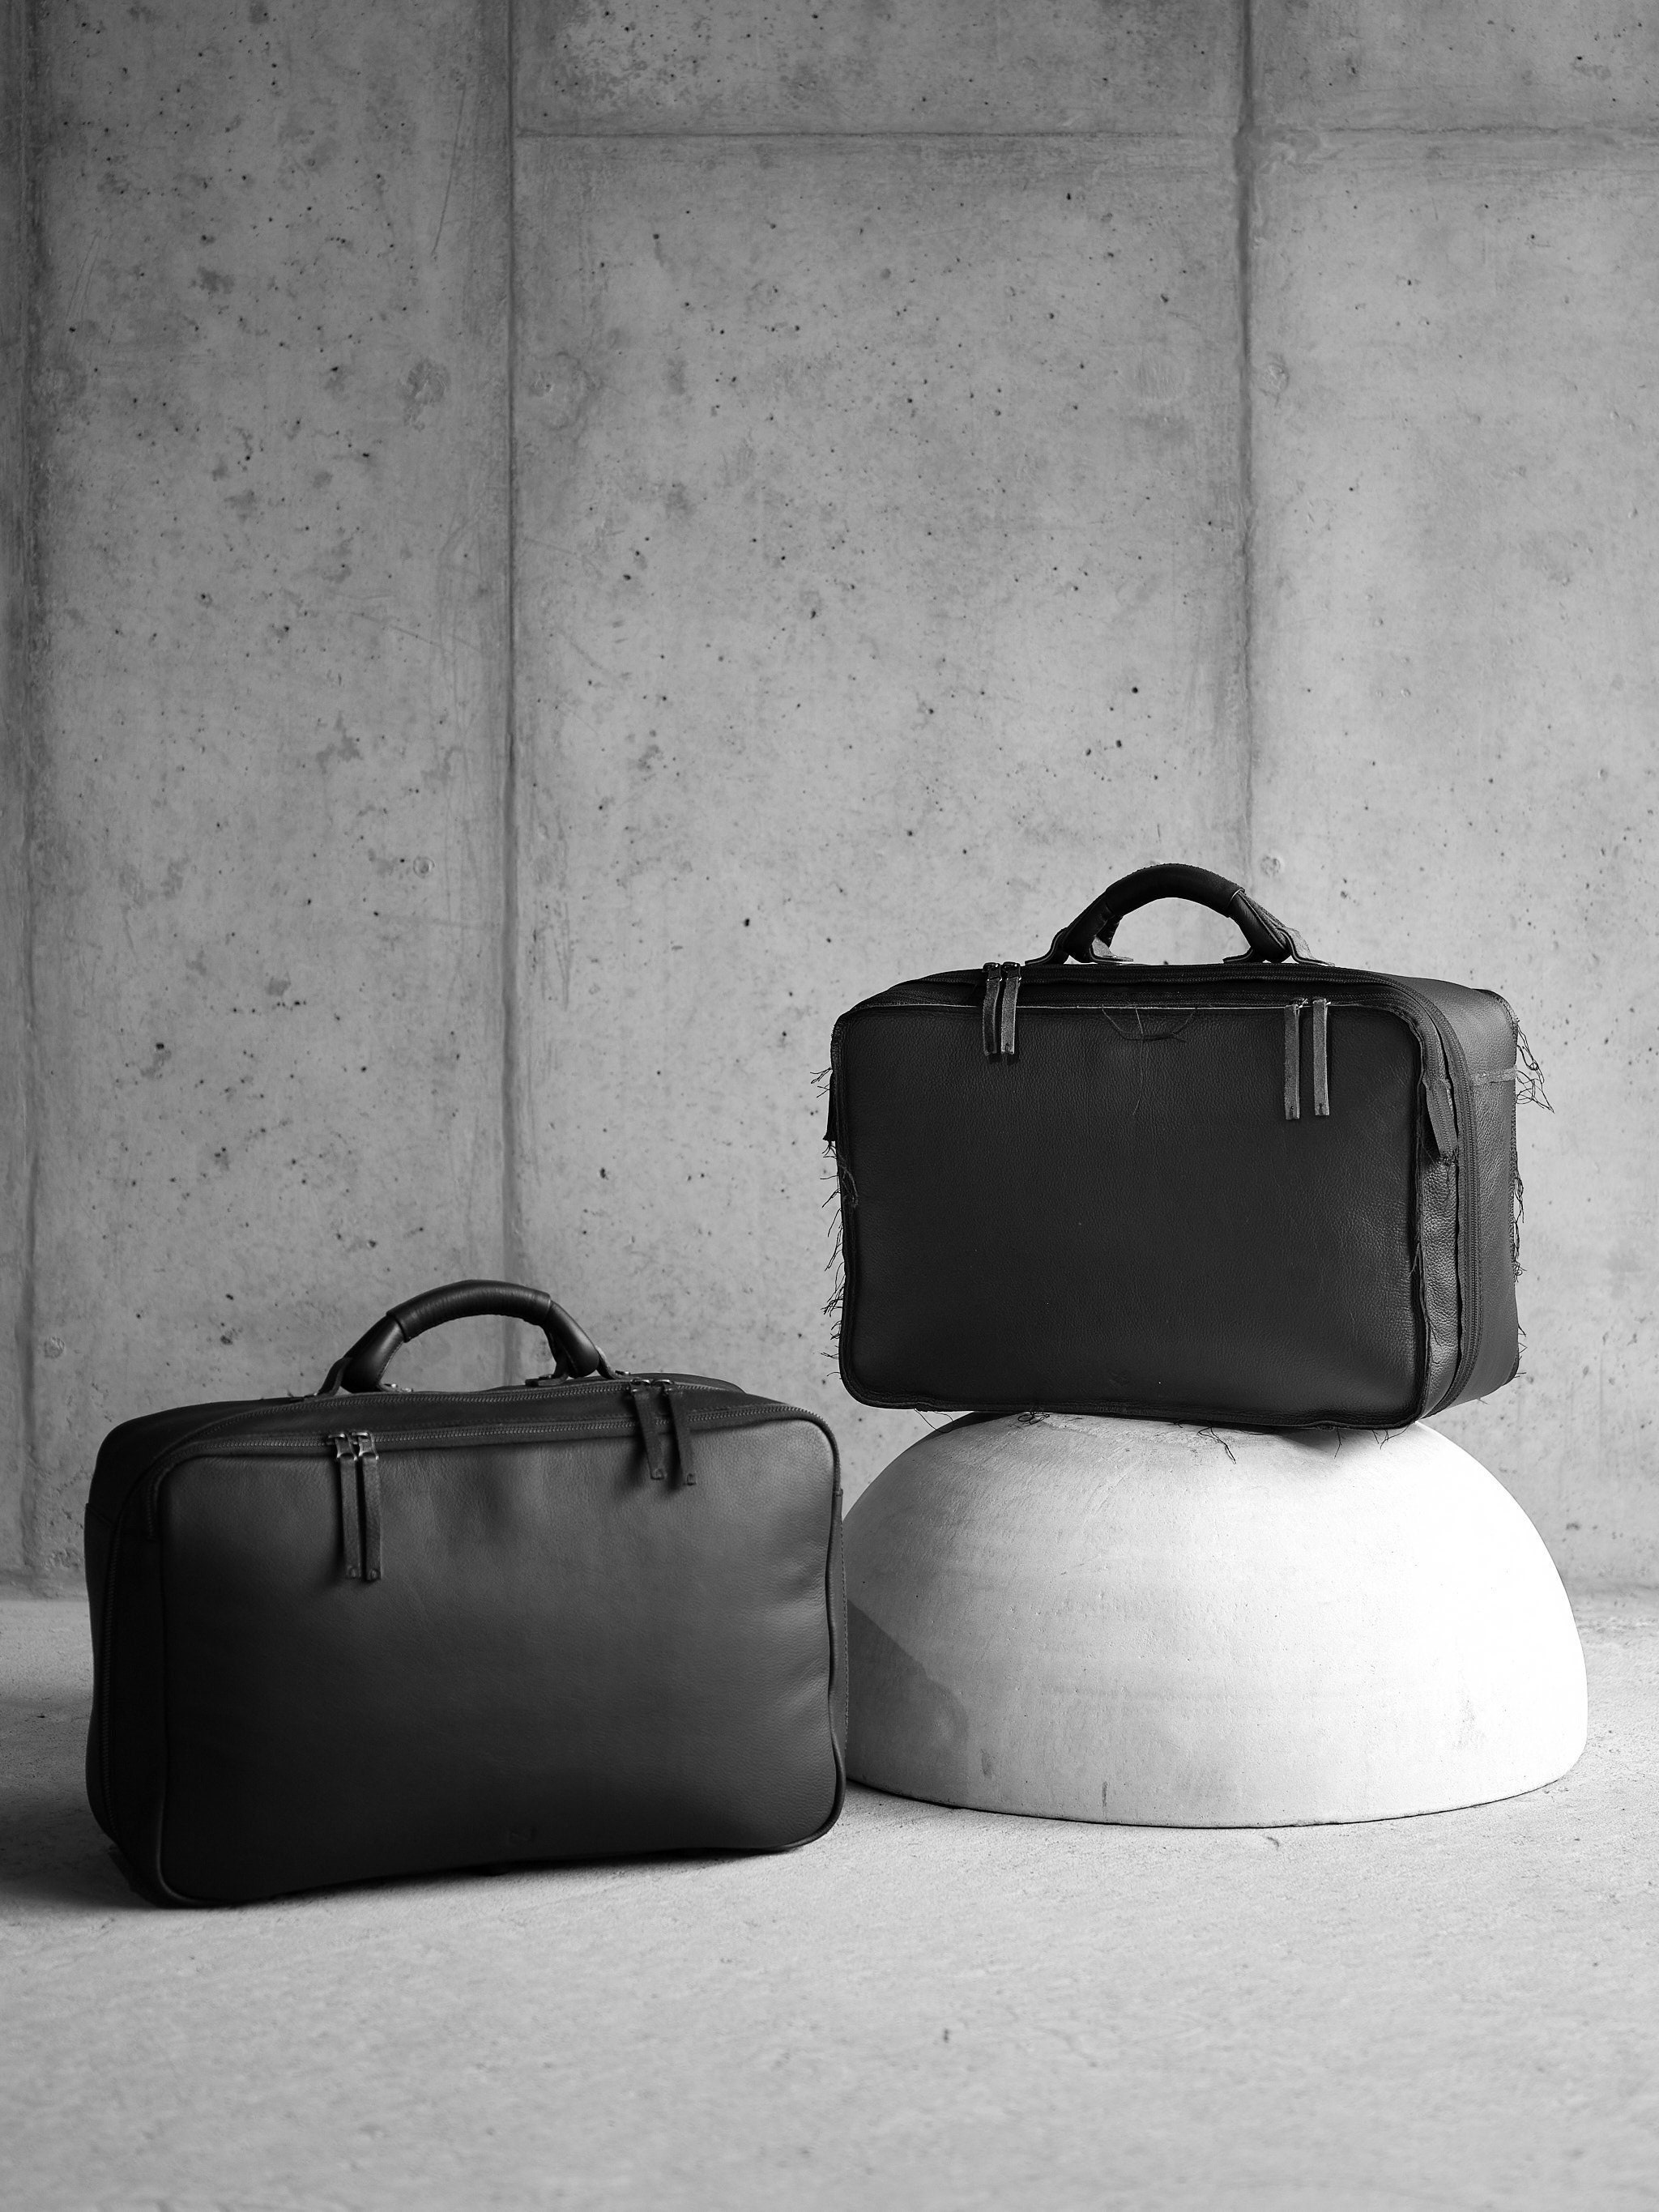 Boldric Overnight Bag - Designer Duffle Bag For Men or Women